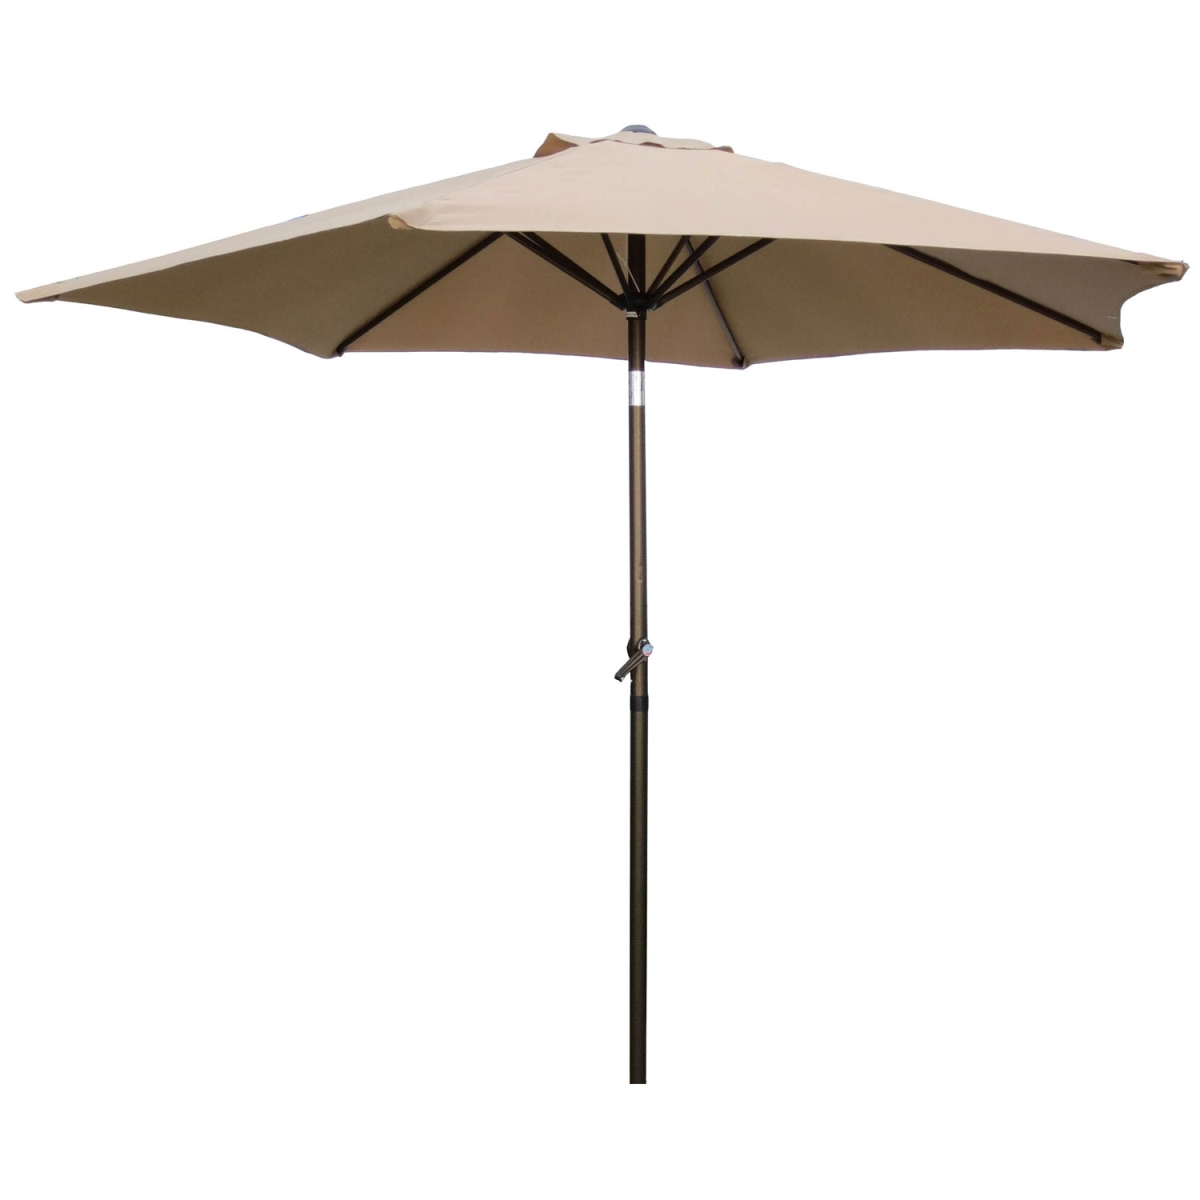 Yf-1104-2.5m-kh 8 Ft. Outdoor Aluminum Umbrella, Khaki - 10 Lbs